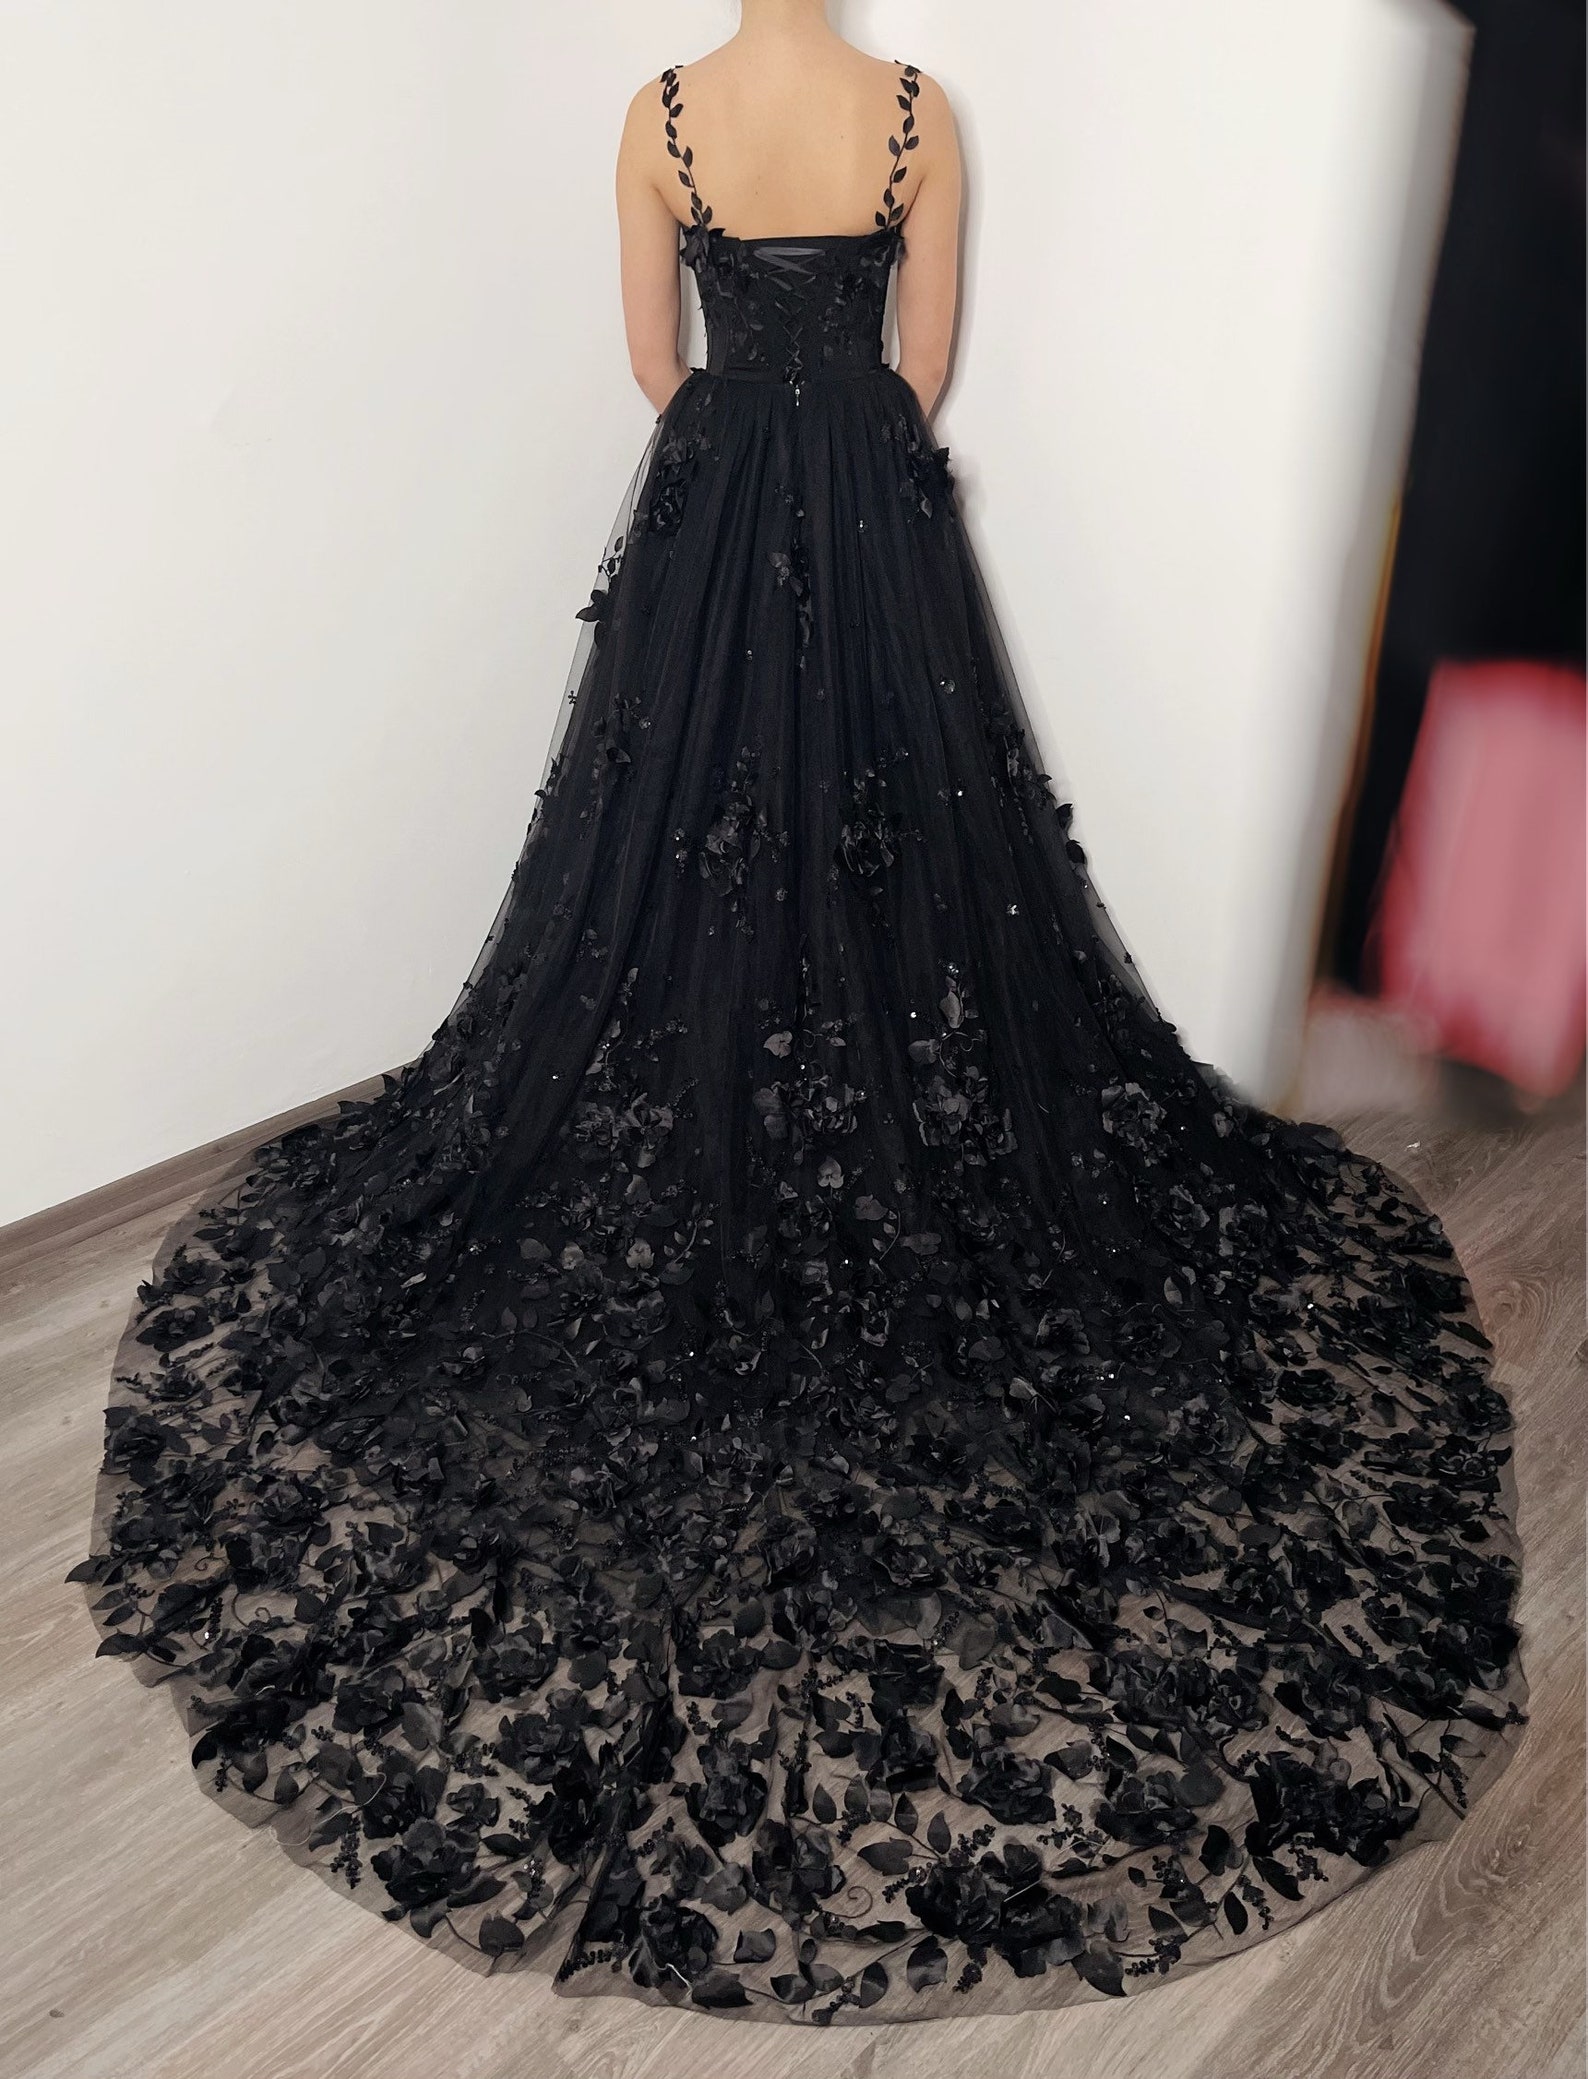 Black Gothic Sparkly 3D Floral Lace Corset Dress Alternative - Etsy